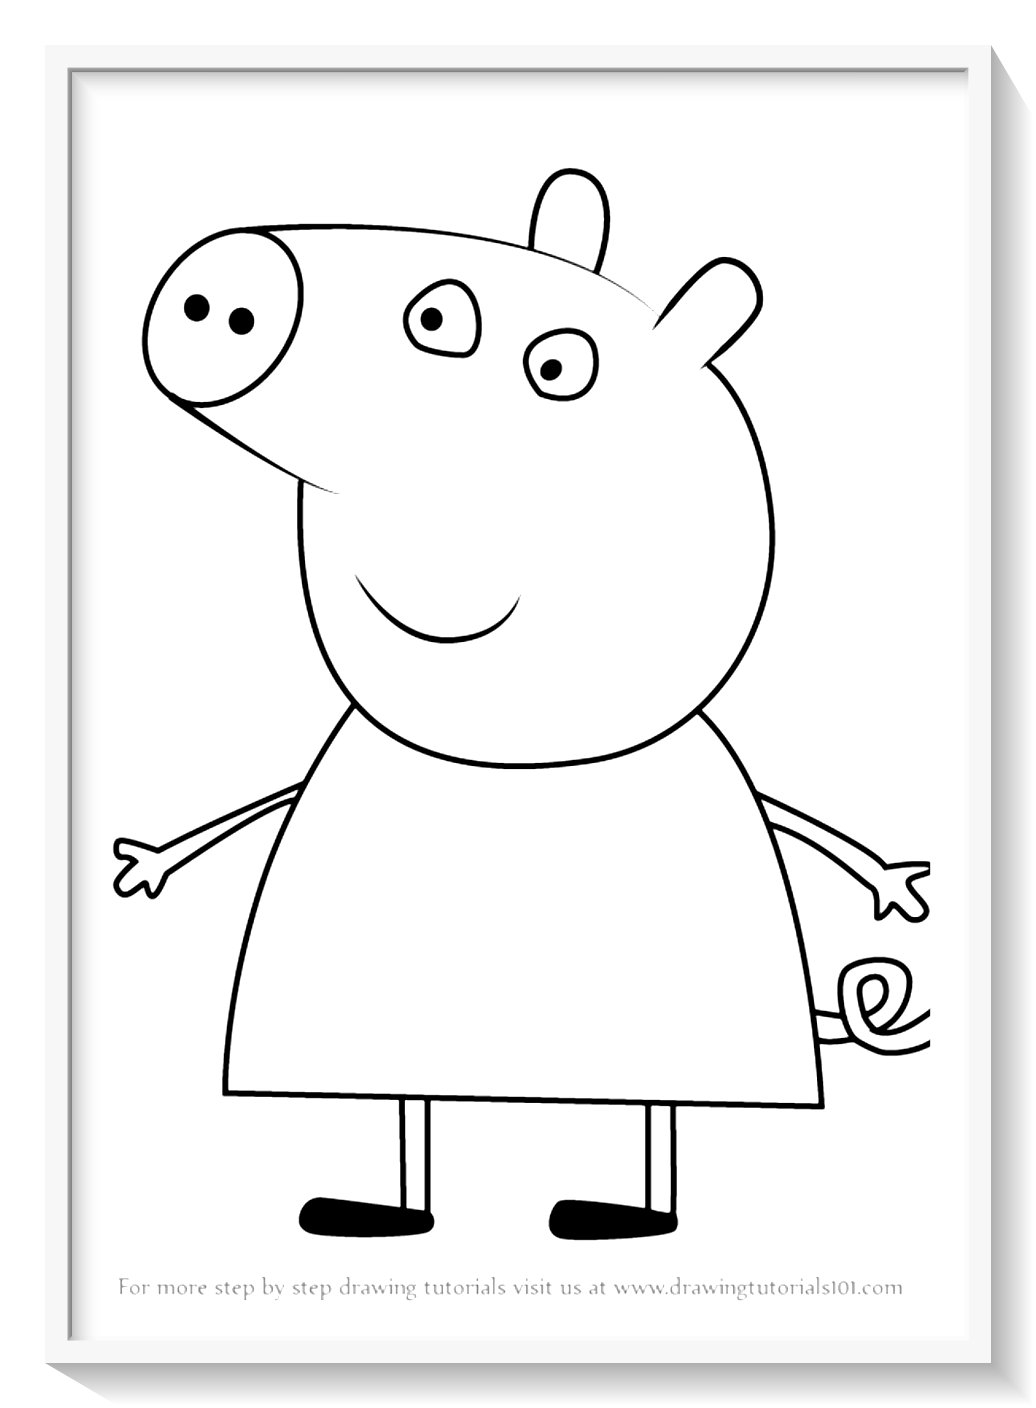 Рисунок свинки Пеппы